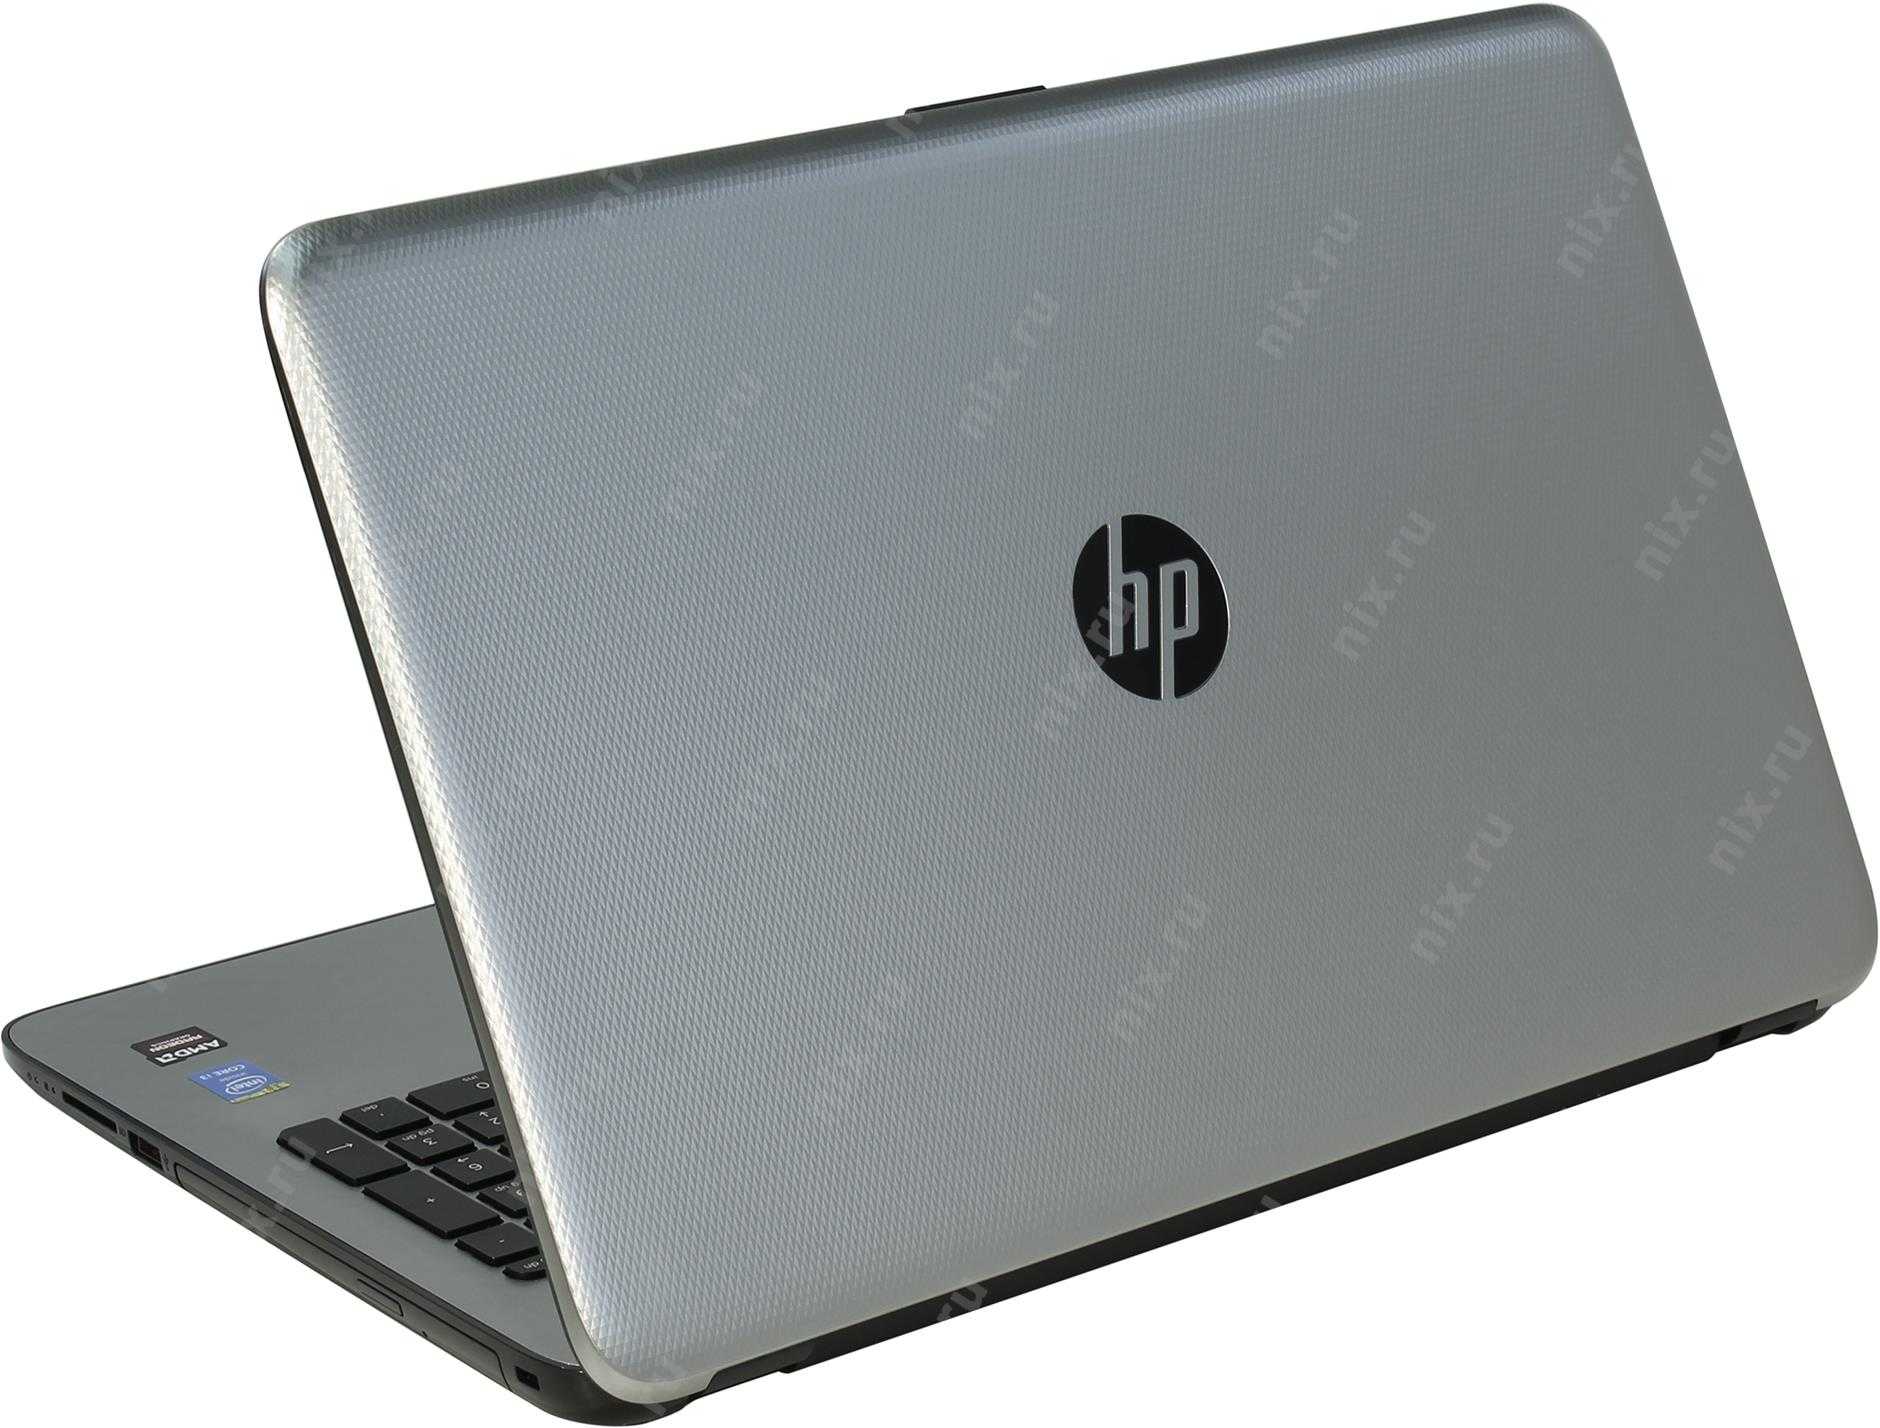 Ноутбук HP Pavilion 15-n000sr (E7F92EA) - подробные характеристики обзоры видео фото Цены в интернет-магазинах где можно купить ноутбук HP Pavilion 15-n000sr (E7F92EA)